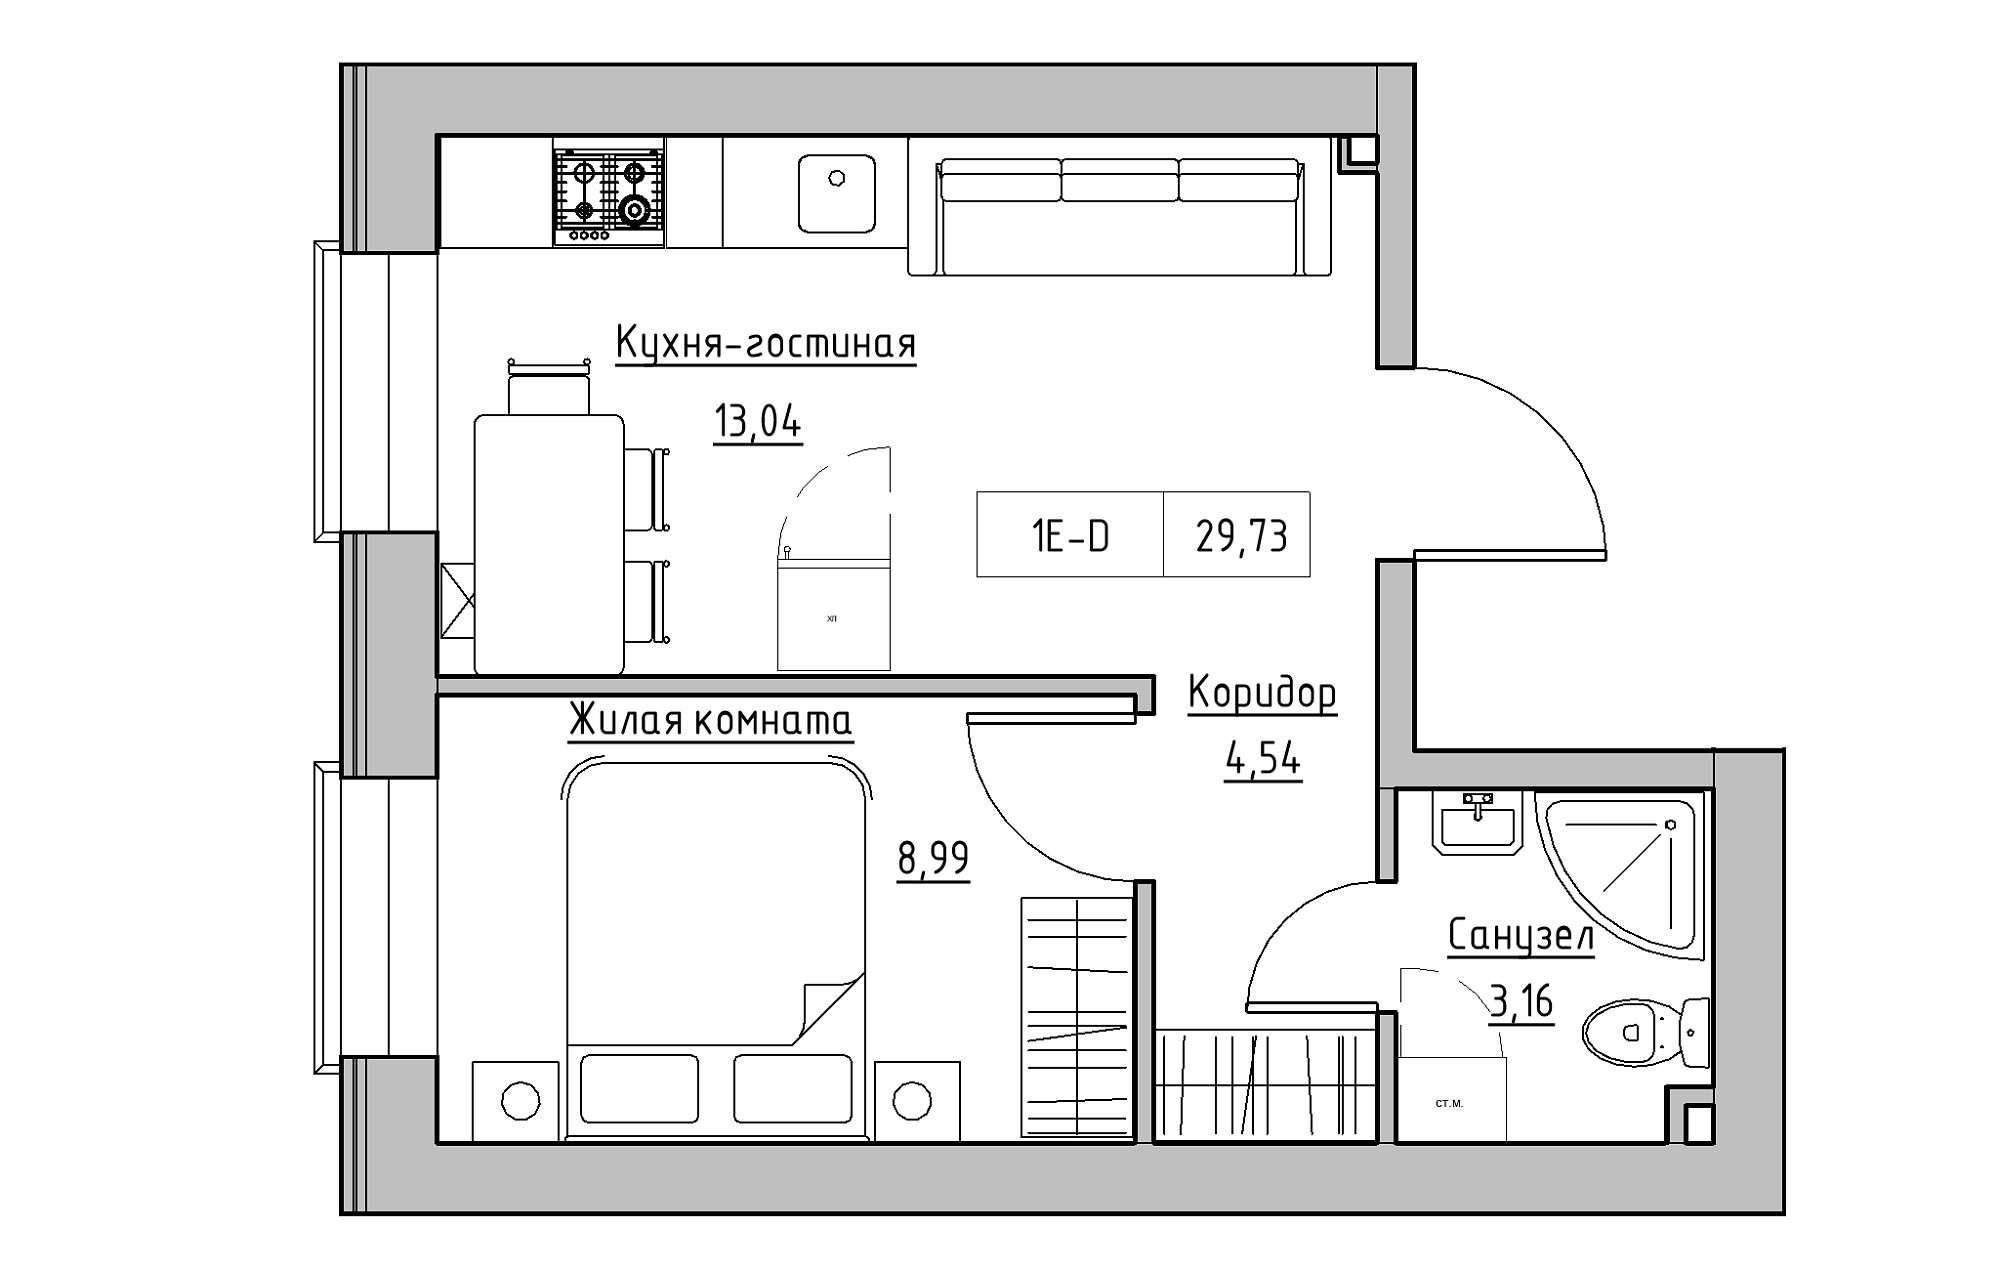 Планировка 1-к квартира площей 29.73м2, KS-018-01/0012.